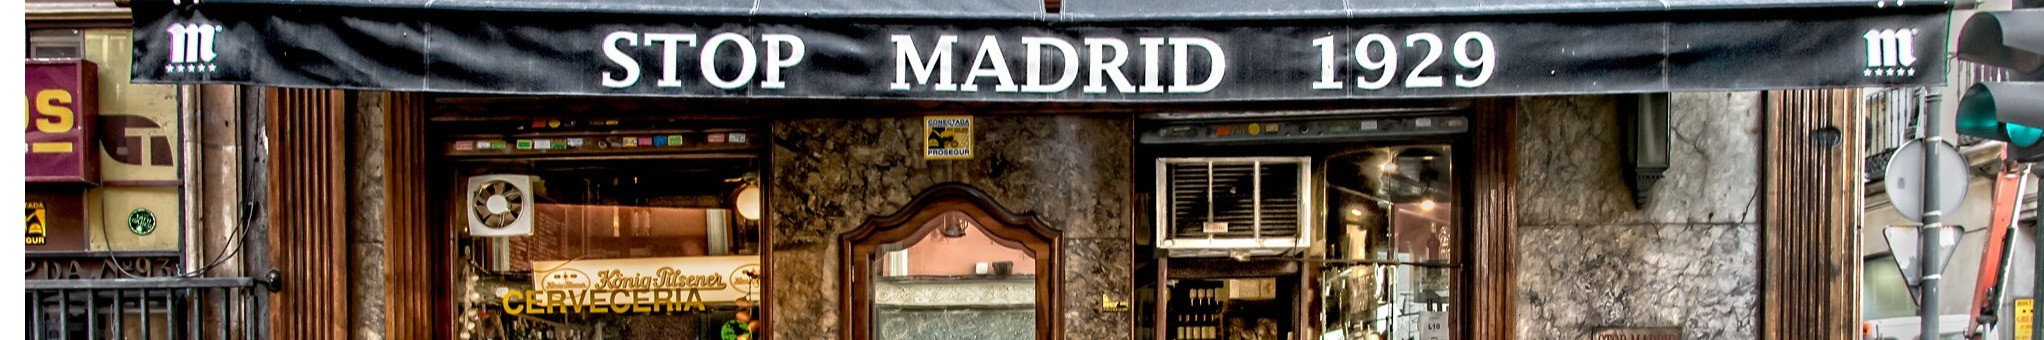 Vinos, copas, tapas y raciones en el centro de Madrid